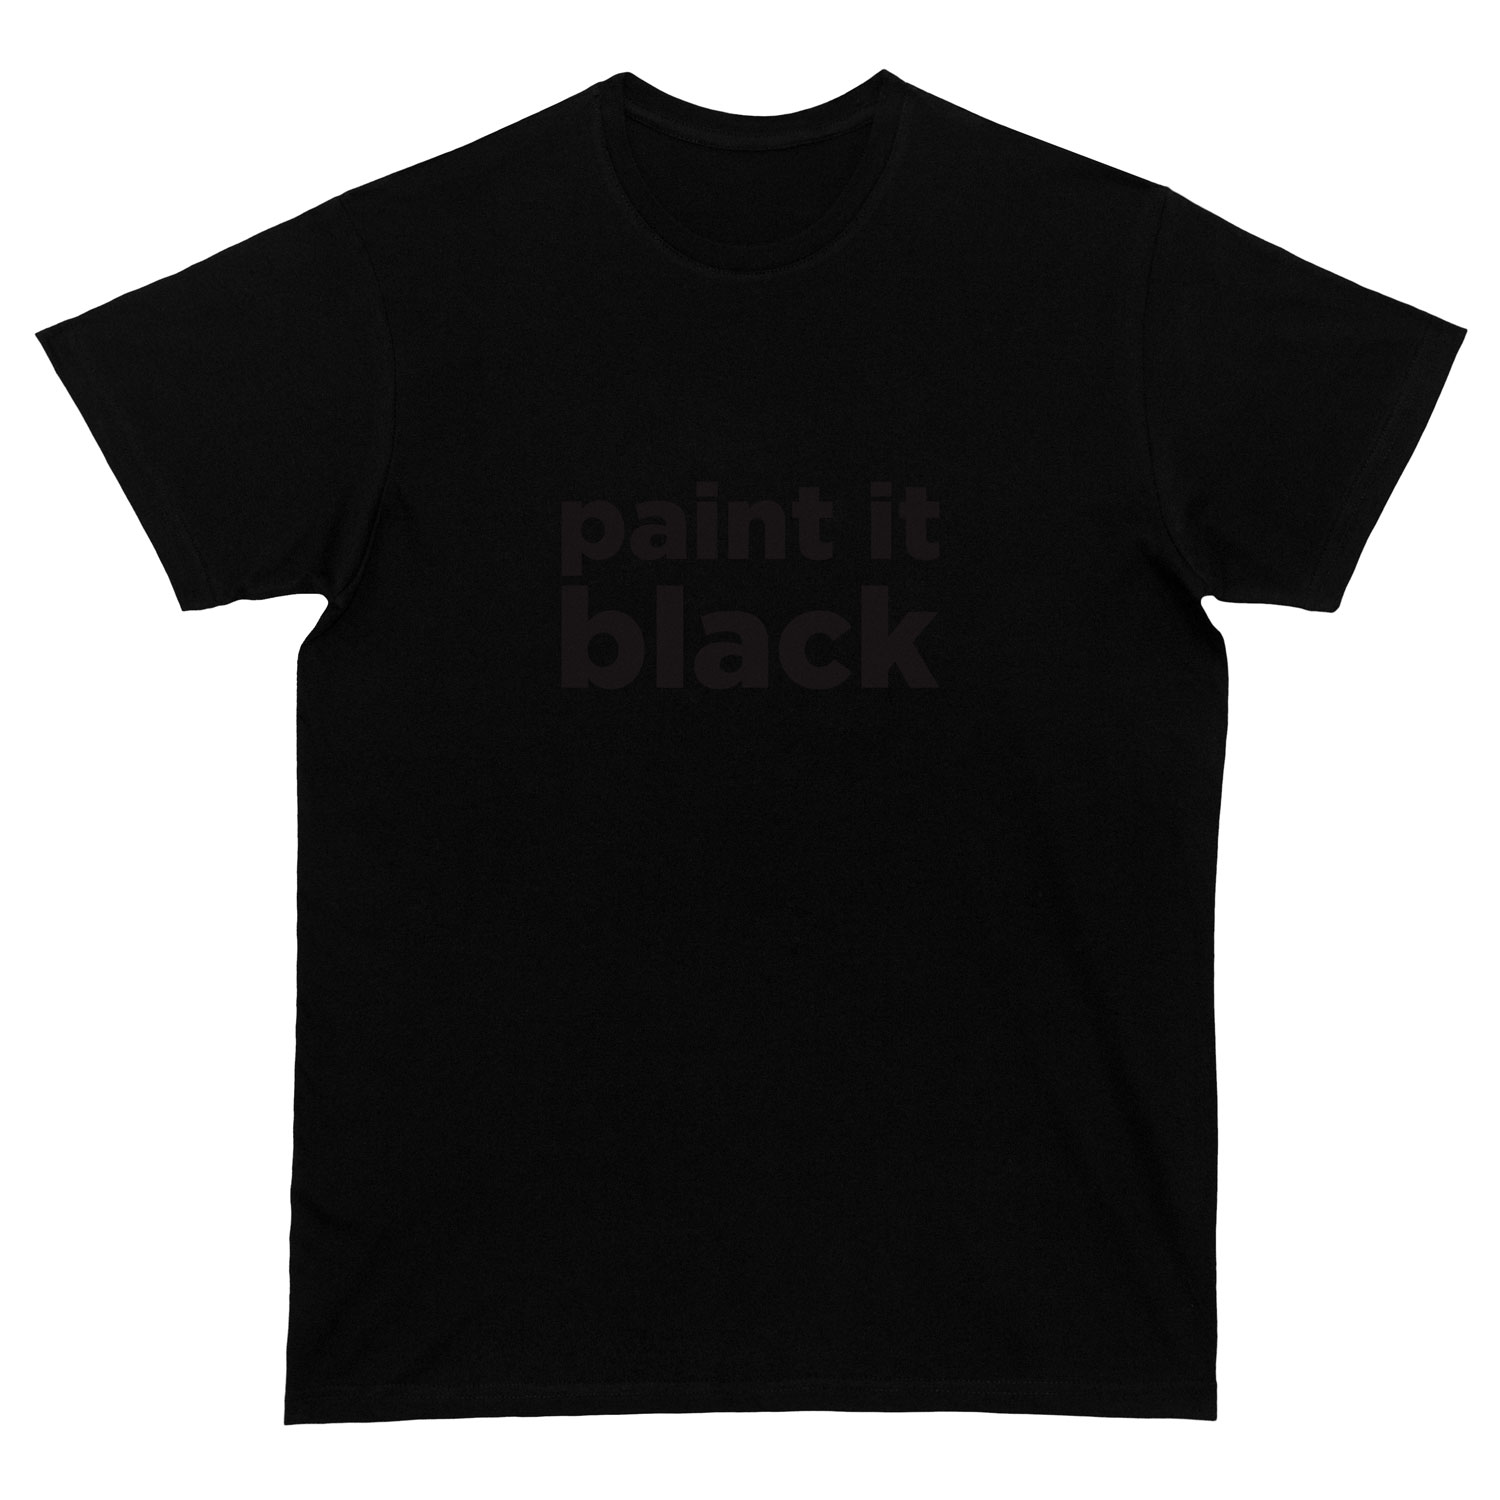 Paint It Black T-Shirt - Sclebez - Heat Transfer Vinyl Print